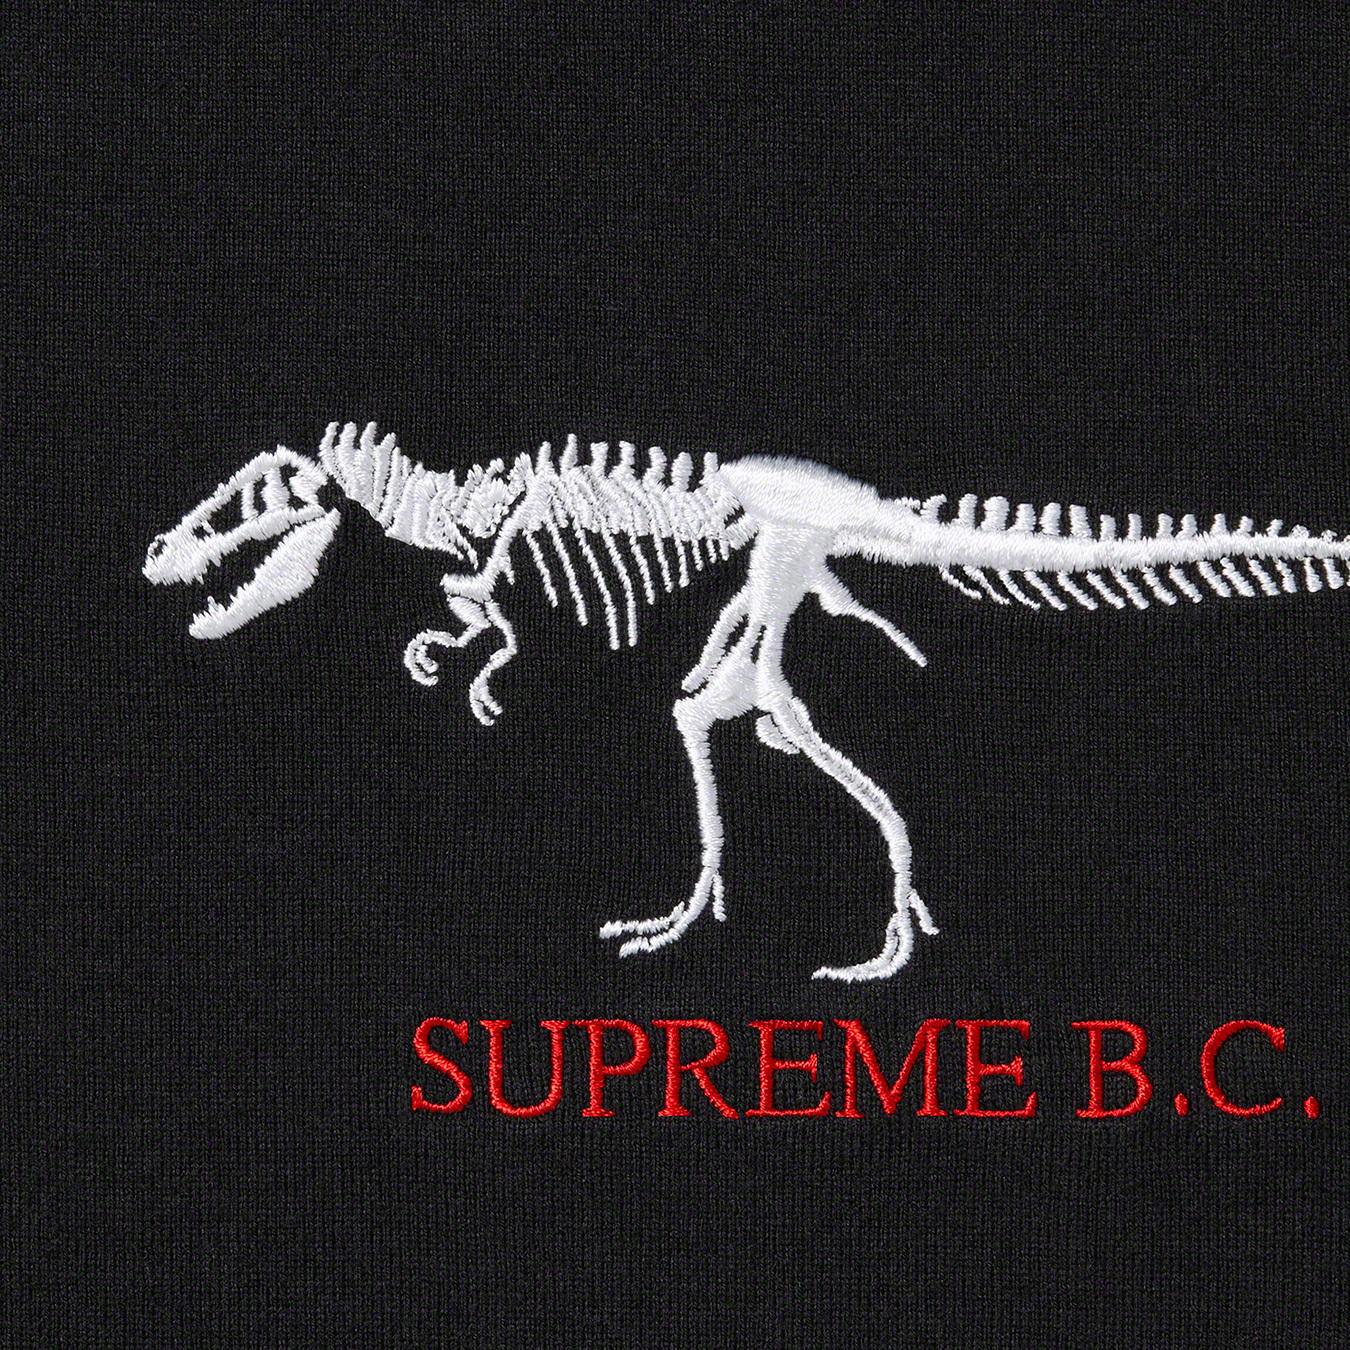 Supreme B.C. S/S Top